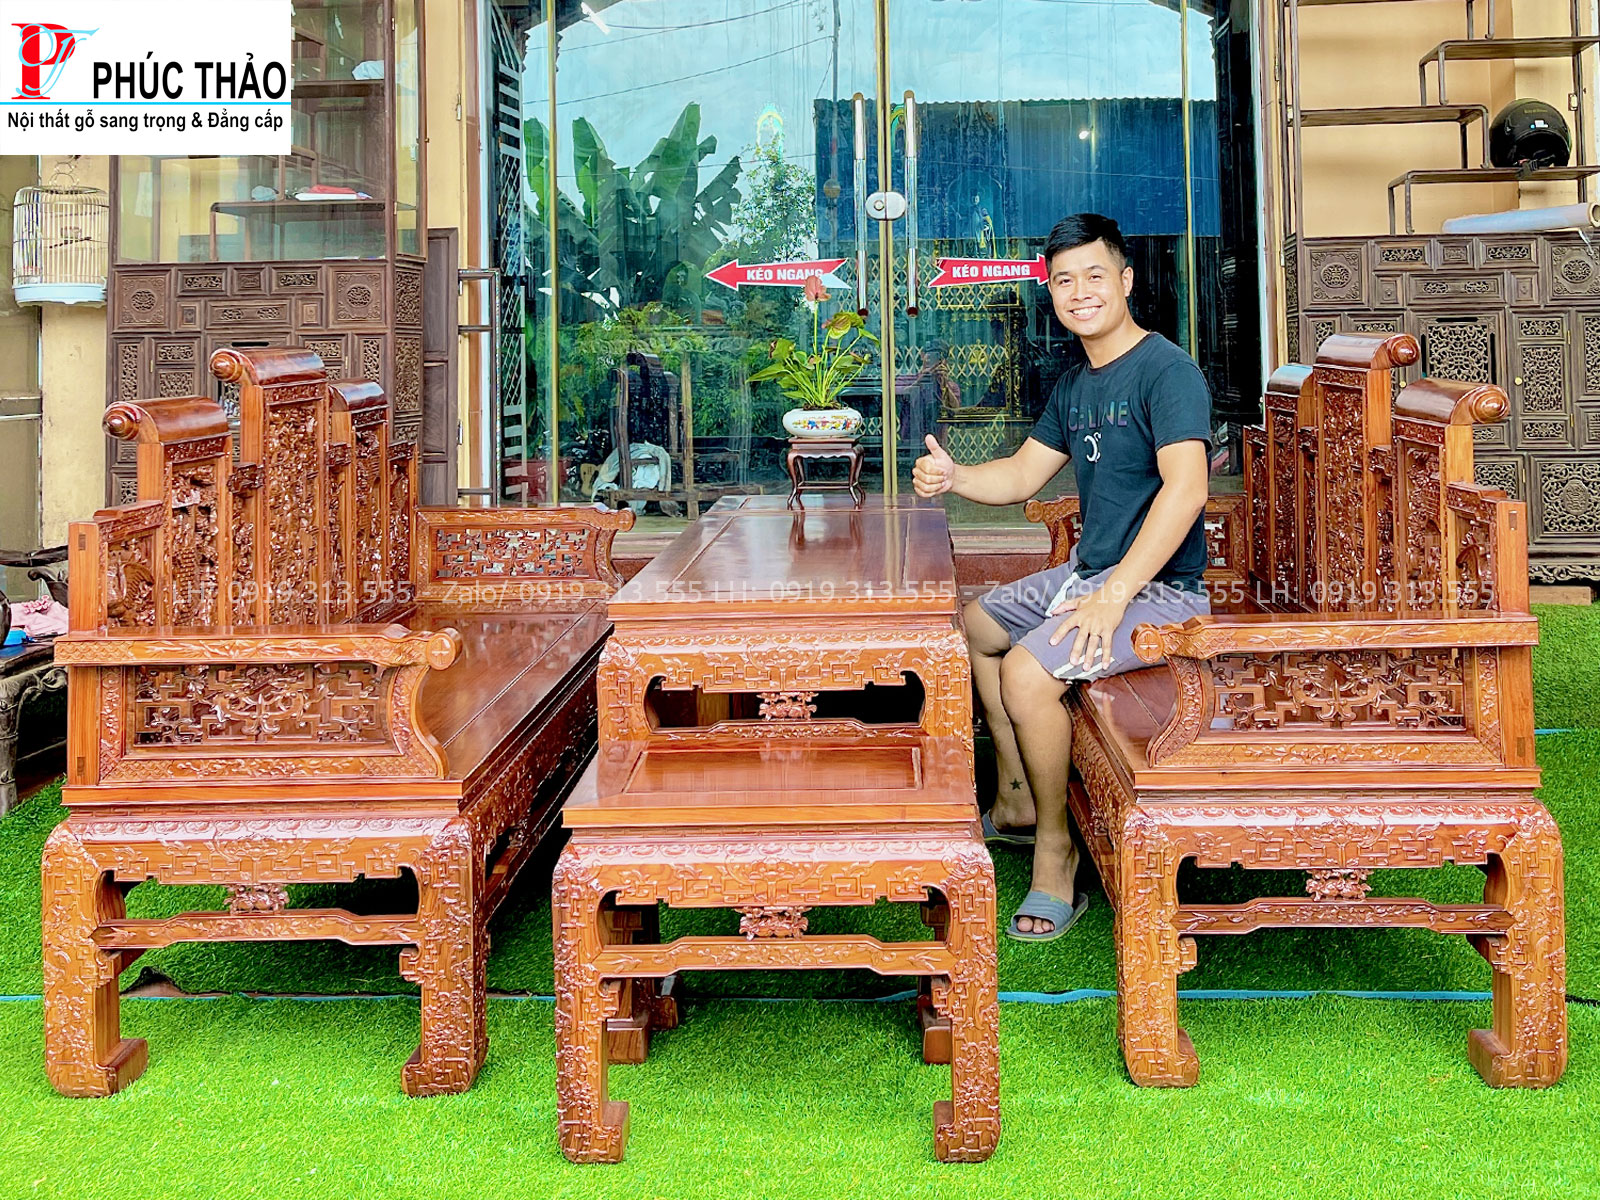 Lợi ích dành cho khách hàng khi mua trường kỷ Huế tại Phucthao.vn